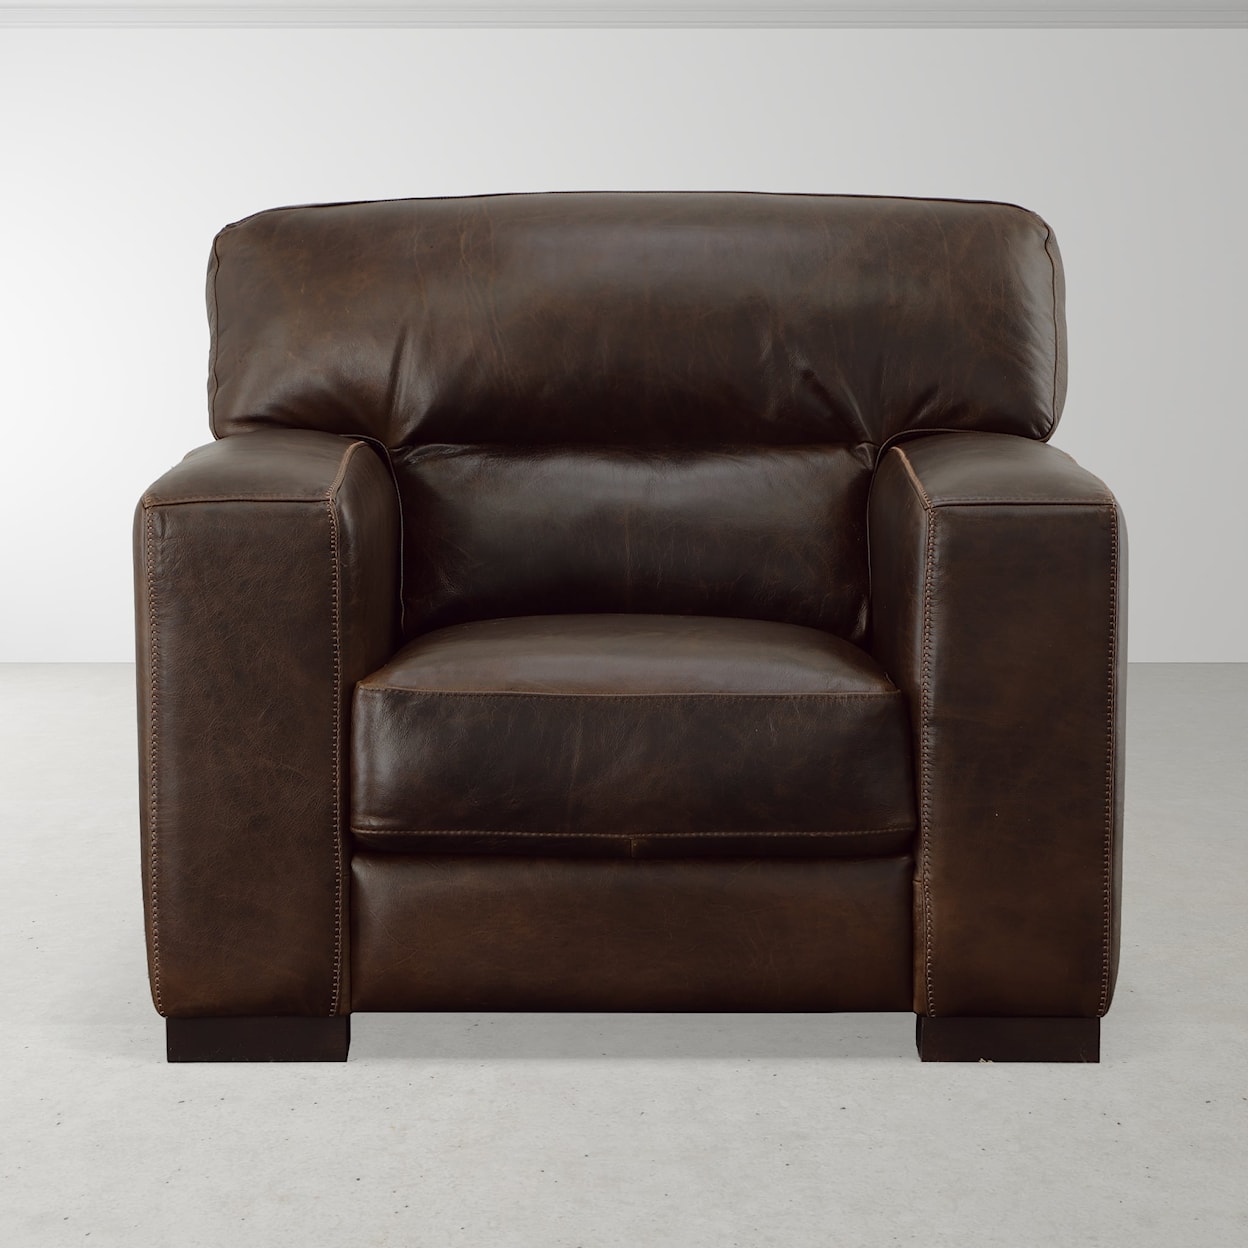 Virginia Furniture Market Premium Leather Brescia Chair